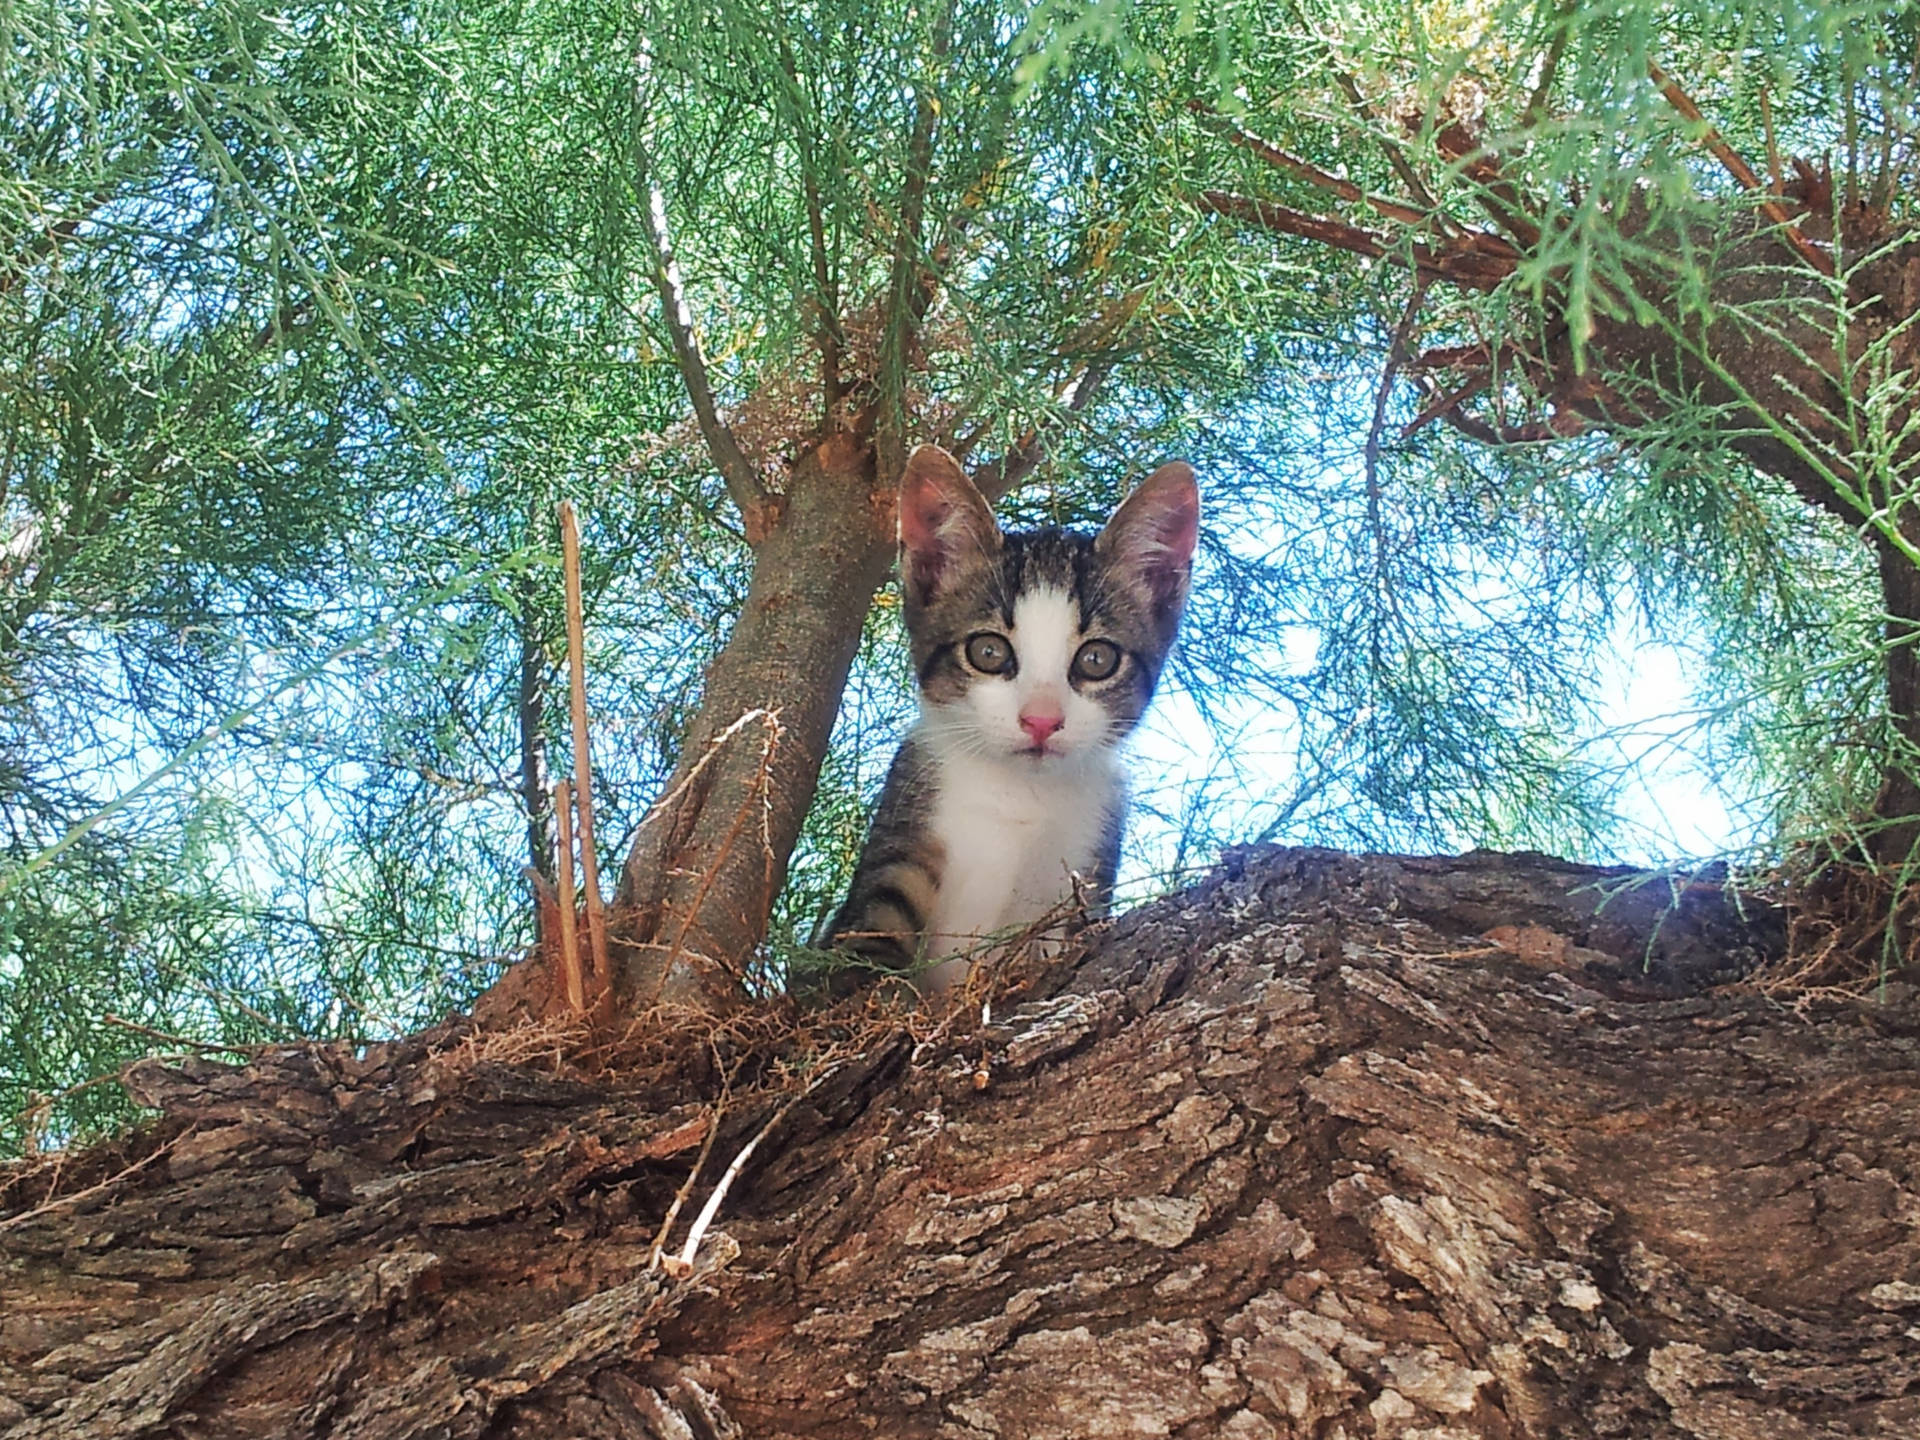 Cute Kitten Tree Looking Down